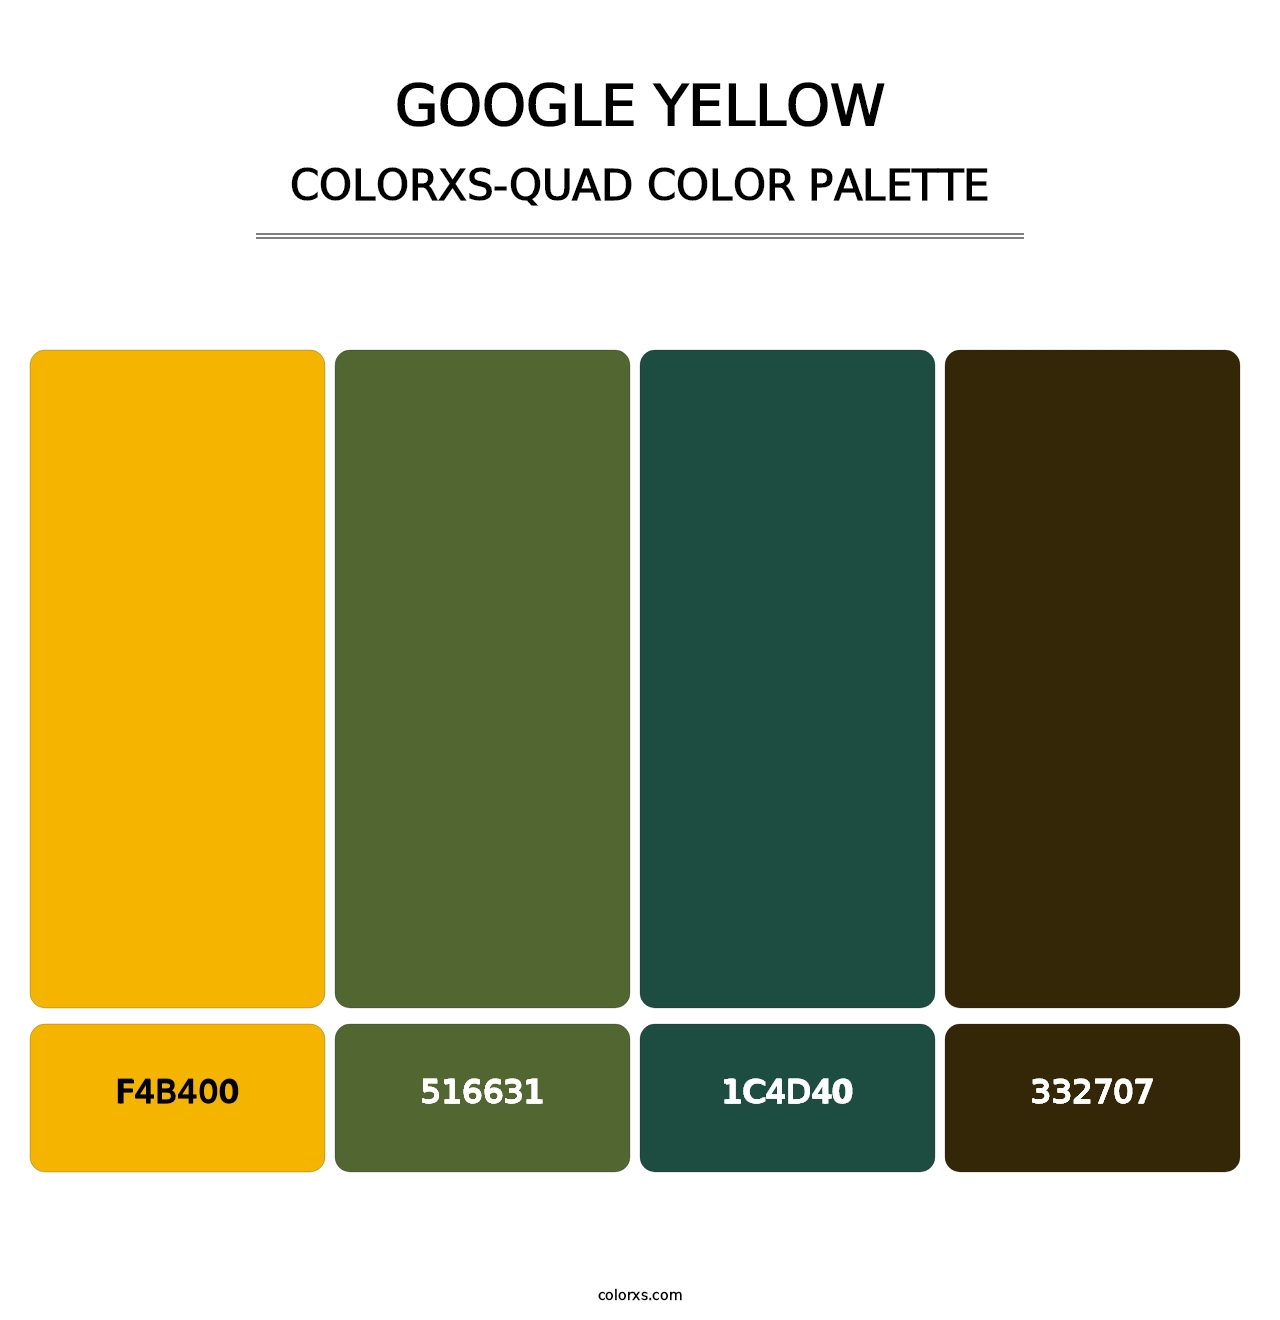 Google Yellow - Colorxs Quad Palette